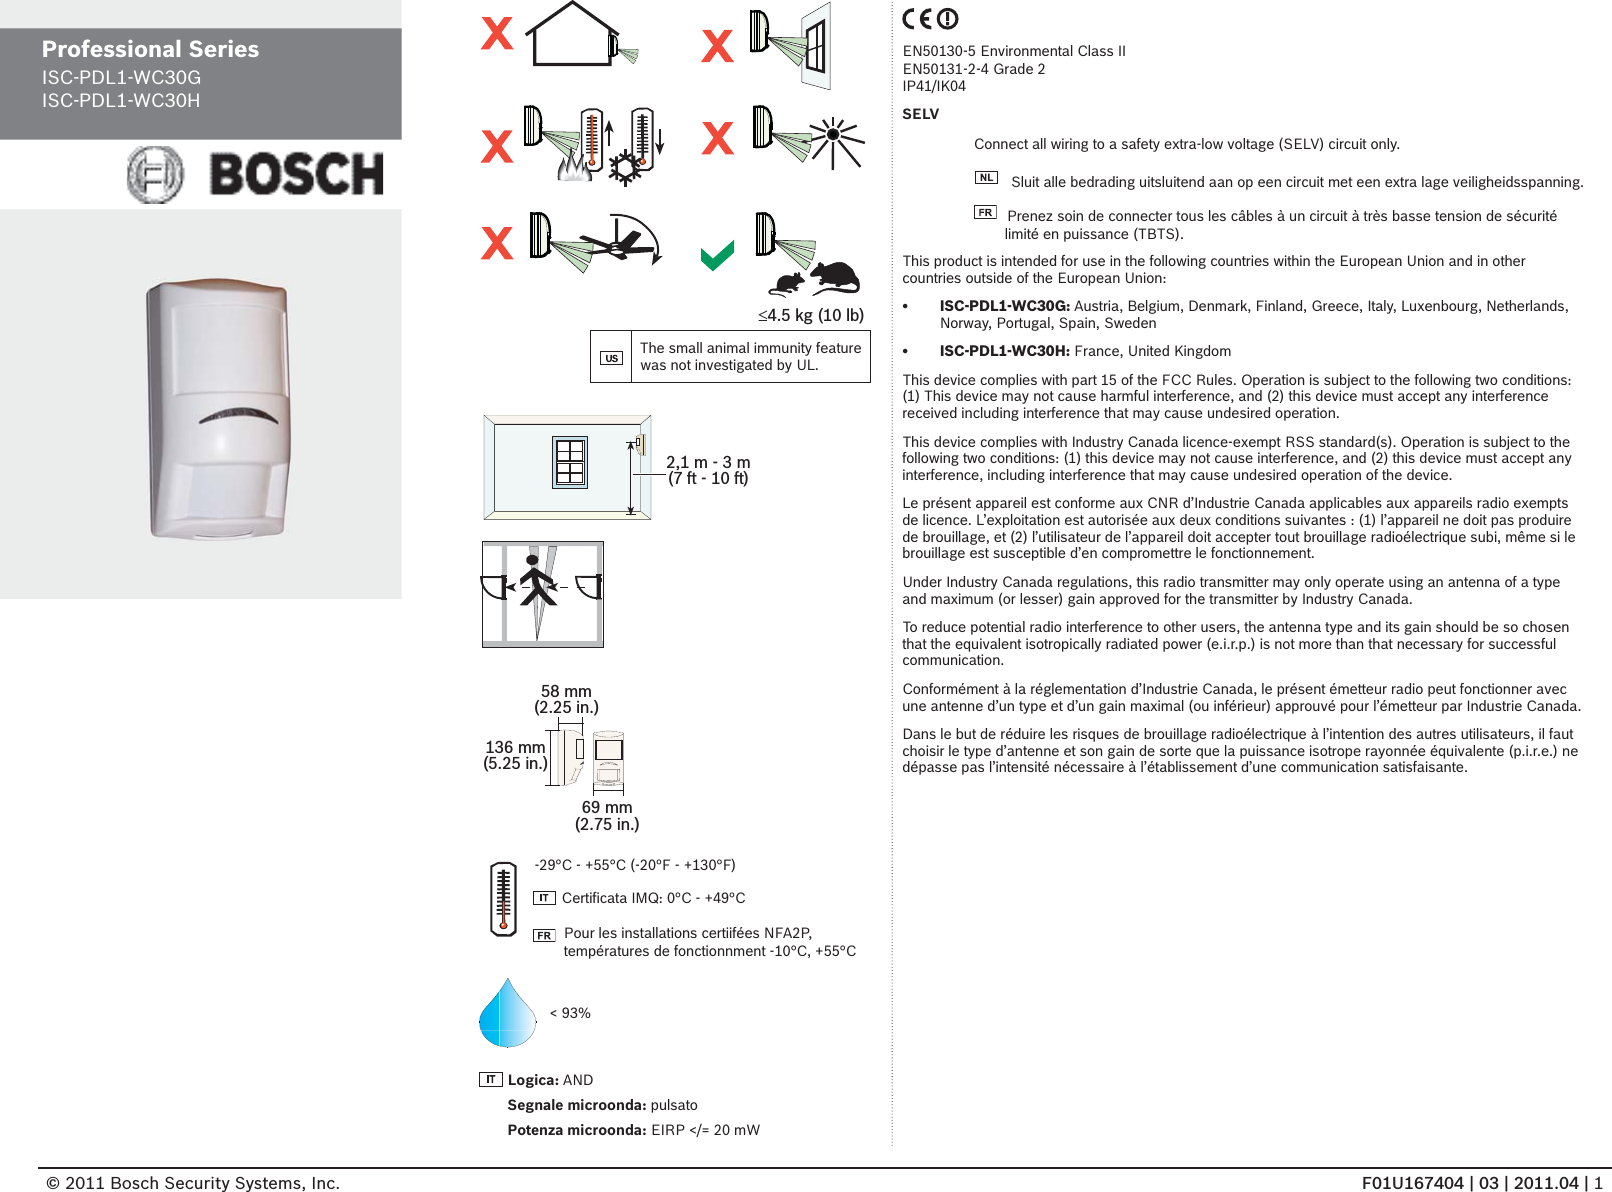 © 2011 Bosch Security Systems, Inc.               F01U167404 | 03 | 2011.04 | 1Professional Series ISC-PDL1-WC30GISC-PDL1-WC30H£4.5 kg (10 lb)The small animal immunity feature was not investigated by UL.2,1 m - 3 m(7 ft - 10 ft)136 mm(5.25 in.)69 mm(2.75 in.)58 mm(2.25 in.)&lt; 93%Logica: ANDSegnale microonda: pulsatoPotenza microonda: EIRP &lt;/= 20 mW-29°C - +55°C (-20°F - +130°F)  Certiﬁ cata IMQ: 0°C - +49°CPour les installations certiifées NFA2P, températures de fonctionnment -10°C, +55°CEN50130-5 Environmental Class IIEN50131-2-4 Grade 2IP41/IK04SELVConnect all wiring to a safety extra-low voltage (SELV) circuit only.  Sluit alle bedrading uitsluitend aan op een circuit met een extra lage veiligheidsspanning.  Prenez soin de connecter tous les câbles à un circuit à très basse tension de sécurité limité en puissance (TBTS).This product is intended for use in the following countries within the European Union and in other countries outside of the European Union: ISC-PDL1-WC30G:•   Austria, Belgium, Denmark, Finland, Greece, Italy, Luxenbourg, Netherlands, Norway, Portugal, Spain, SwedenISC-PDL1-WC30H:•   France, United KingdomThis device complies with part 15 of the FCC Rules. Operation is subject to the following two conditions:  (1) This device may not cause harmful interference, and (2) this device must accept any interference received including interference that may cause undesired operation.This device complies with Industry Canada licence-exempt RSS standard(s). Operation is subject to the following two conditions: (1) this device may not cause interference, and (2) this device must accept any interference, including interference that may cause undesired operation of the device.Le présent appareil est conforme aux CNR d’Industrie Canada applicables aux appareils radio exempts de licence. L’exploitation est autorisée aux deux conditions suivantes : (1) l’appareil ne doit pas produire de brouillage, et (2) l’utilisateur de l’appareil doit accepter tout brouillage radioélectrique subi, même si le brouillage est susceptible d’en compromettre le fonctionnement.Under Industry Canada regulations, this radio transmitter may only operate using an antenna of a type and maximum (or lesser) gain approved for the transmitter by Industry Canada. To reduce potential radio interference to other users, the antenna type and its gain should be so chosen that the equivalent isotropically radiated power (e.i.r.p.) is not more than that necessary for successful communication.Conformément à la réglementation d’Industrie Canada, le présent émetteur radio peut fonctionner avec une antenne d’un type et d’un gain maximal (ou inférieur) approuvé pour l’émetteur par Industrie Canada. Dans le but de réduire les risques de brouillage radioélectrique à l’intention des autres utilisateurs, il faut choisir le type d’antenne et son gain de sorte que la puissance isotrope rayonnée équivalente (p.i.r.e.) ne dépasse pas l’intensité nécessaire à l’établissement d’une communication satisfaisante.